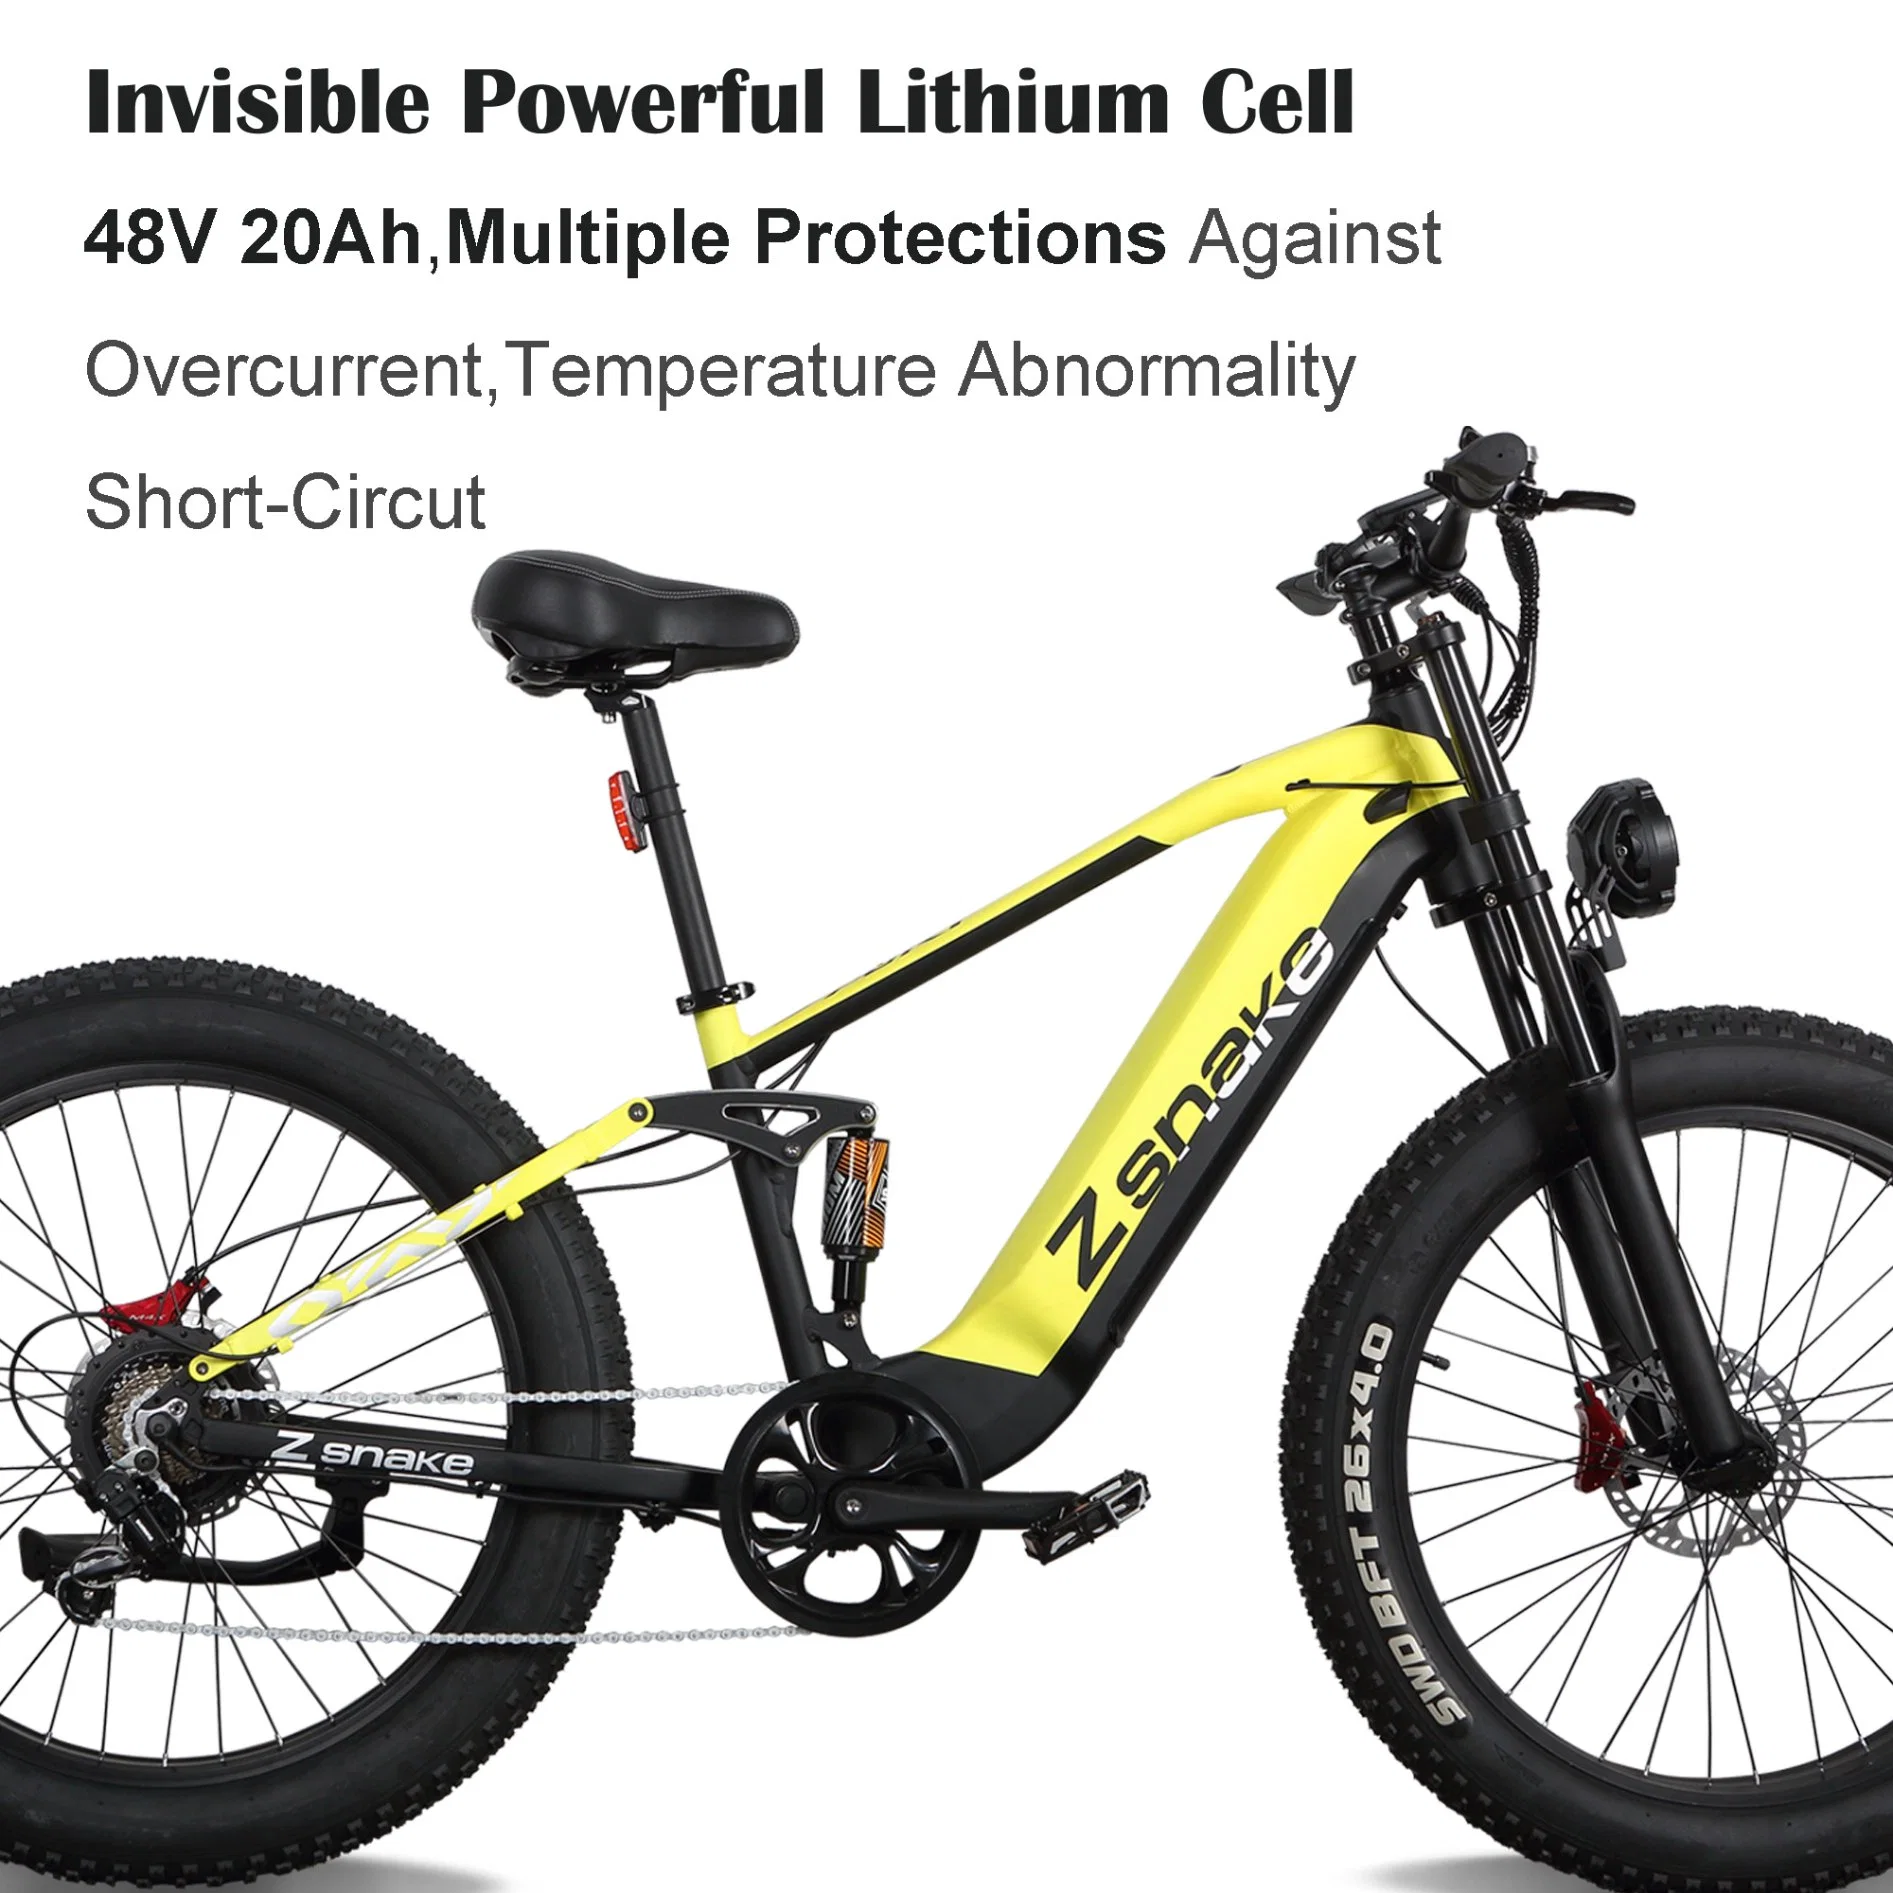 Zsnake Rendimiento de alta calidad/alto costo 750W bicicleta eléctrica adultos 30 mph aluminio Bicicleta de Montaña Eléctrica de aleación 48V 20A